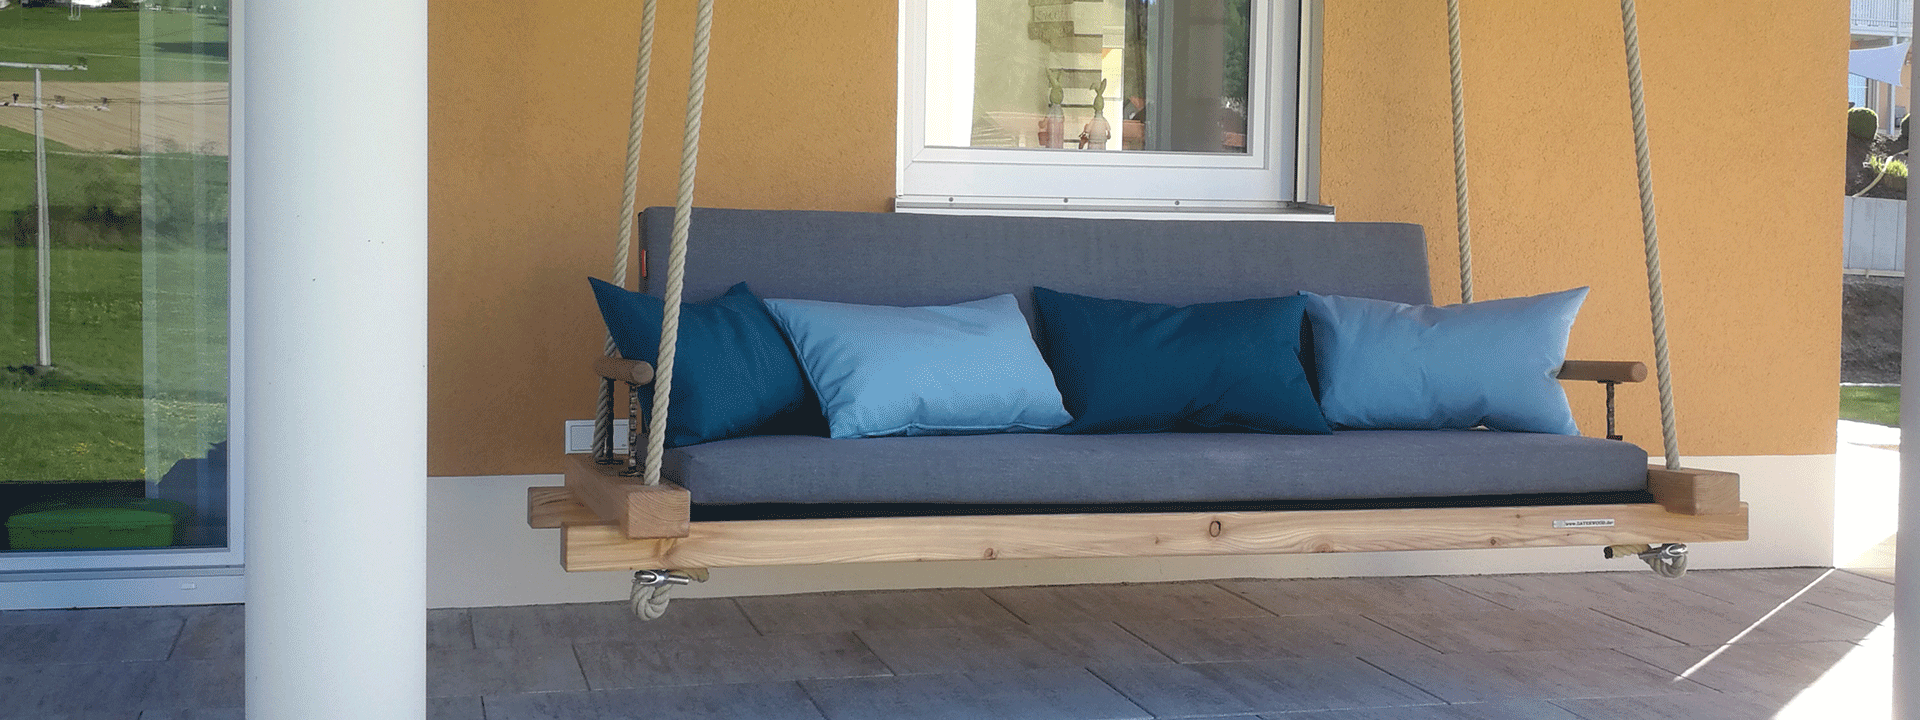 Terrassenschaukel aus Holz mit grauer Auflage